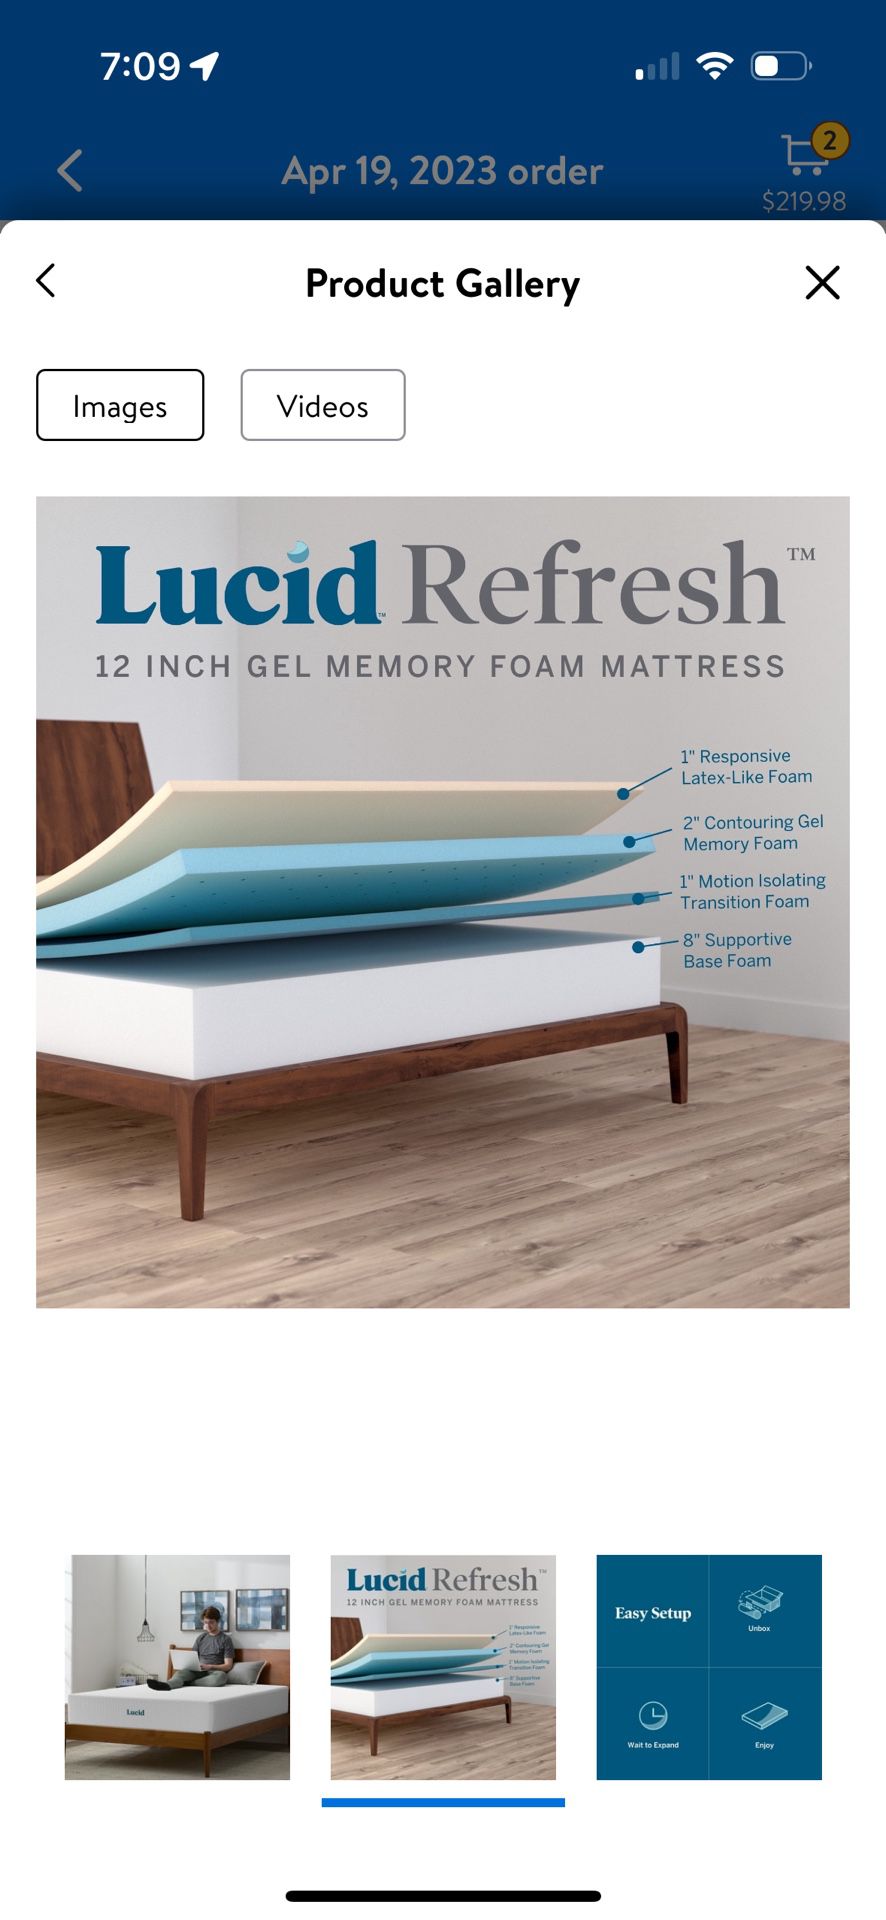 12 inch KING SIZE LUCID refresh Memory foam Gel mattress for sale